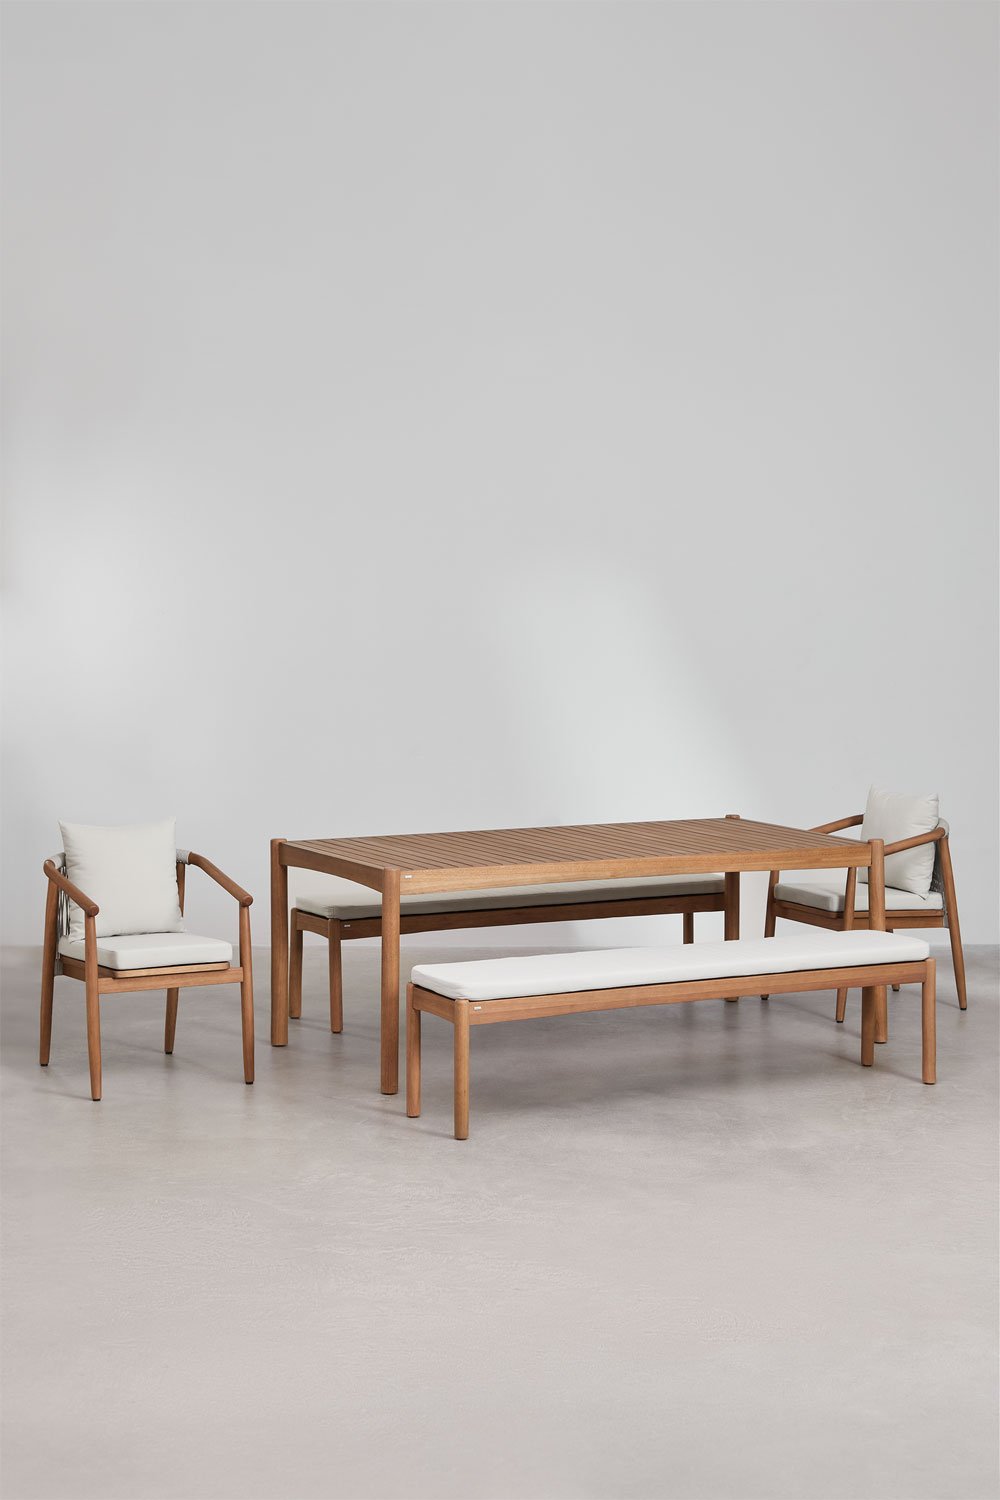 Rechthoekige tafelset (200x100 cm), 2 banken en 2 eetkamerstoelen met armleuningen in eucalyptushout Aderyn, galerij beeld 1